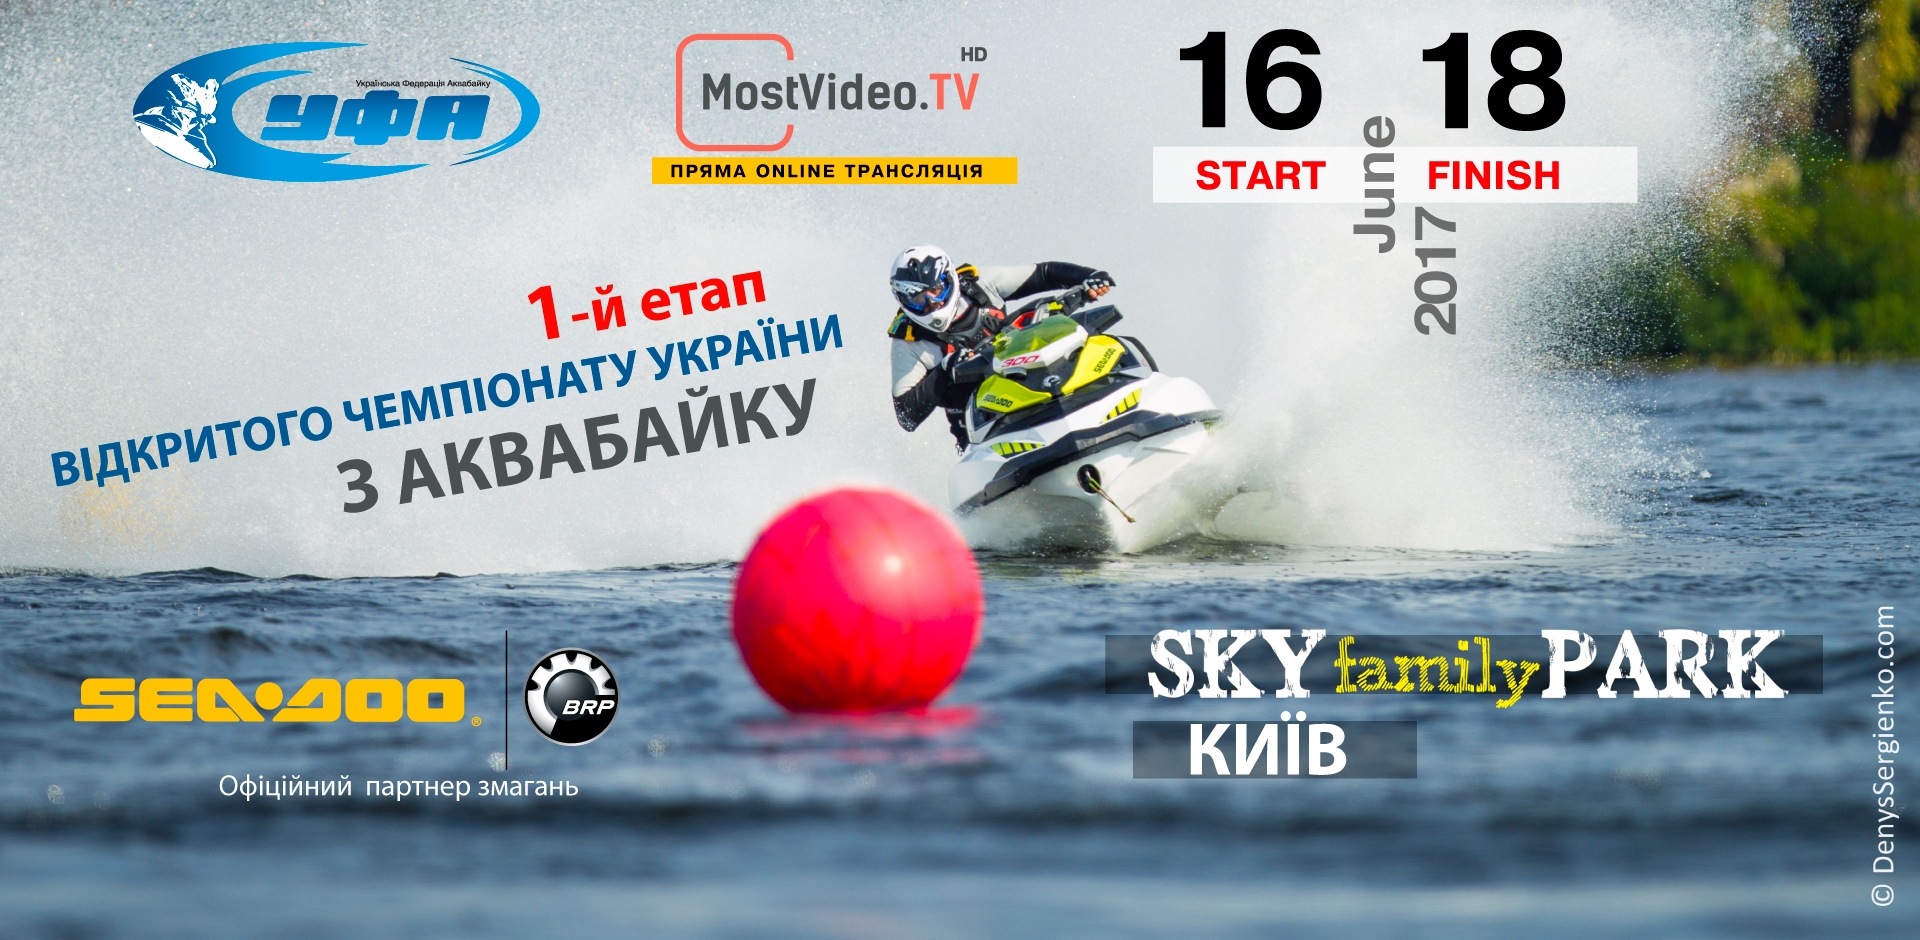 17-18 червня, 1-й етап чемпіонату України з аквабайку!